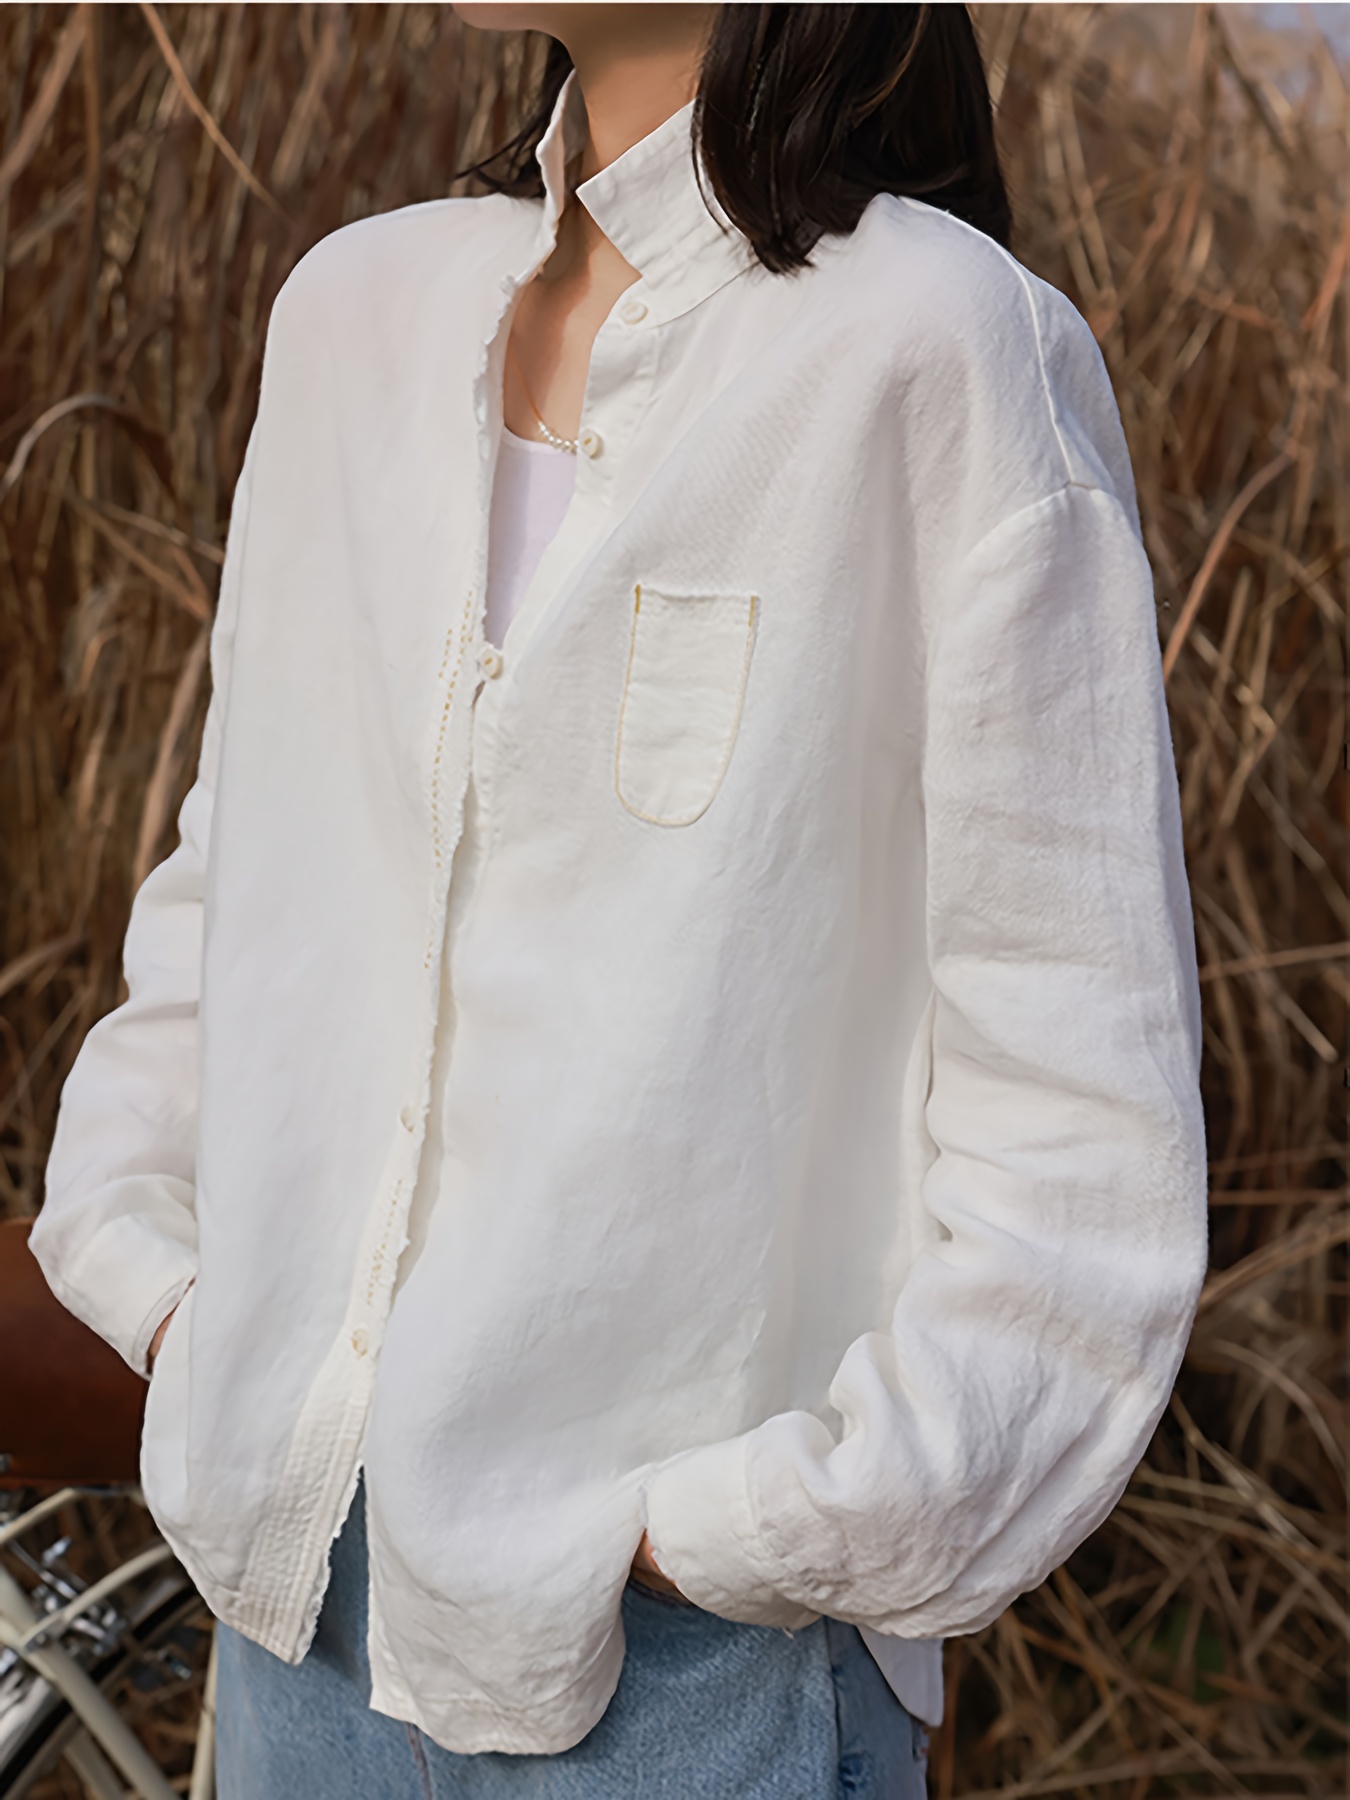 Camisa blanca de manga larga con cuello abotonada, camiseta manga